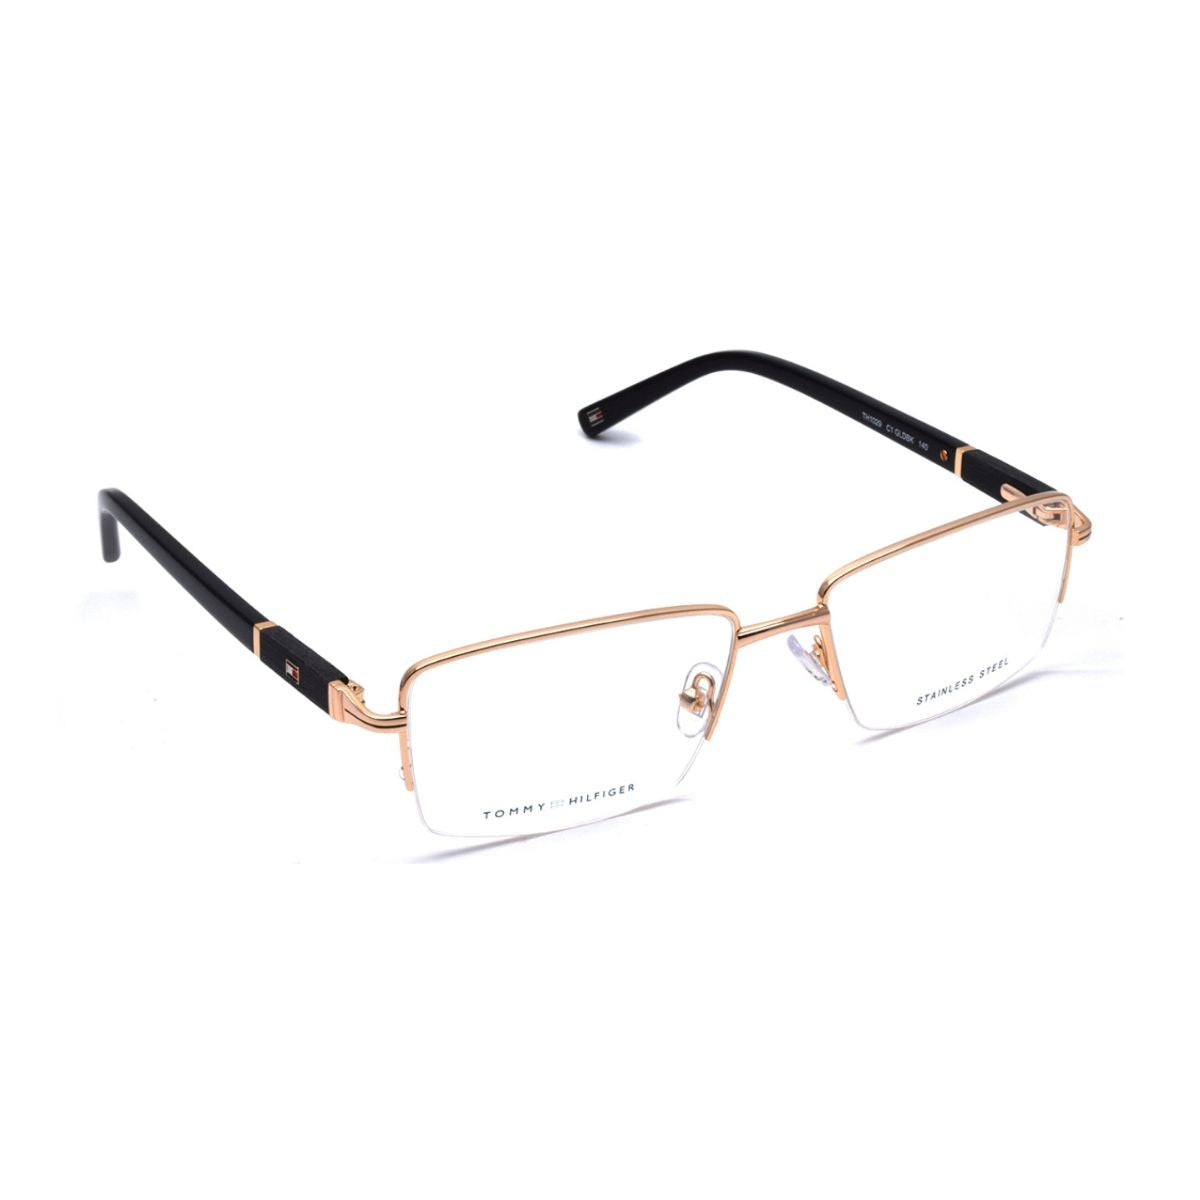 "buy Tommy Hilfiger 1029 C8 prescription glasses frame for men's online at optorium"